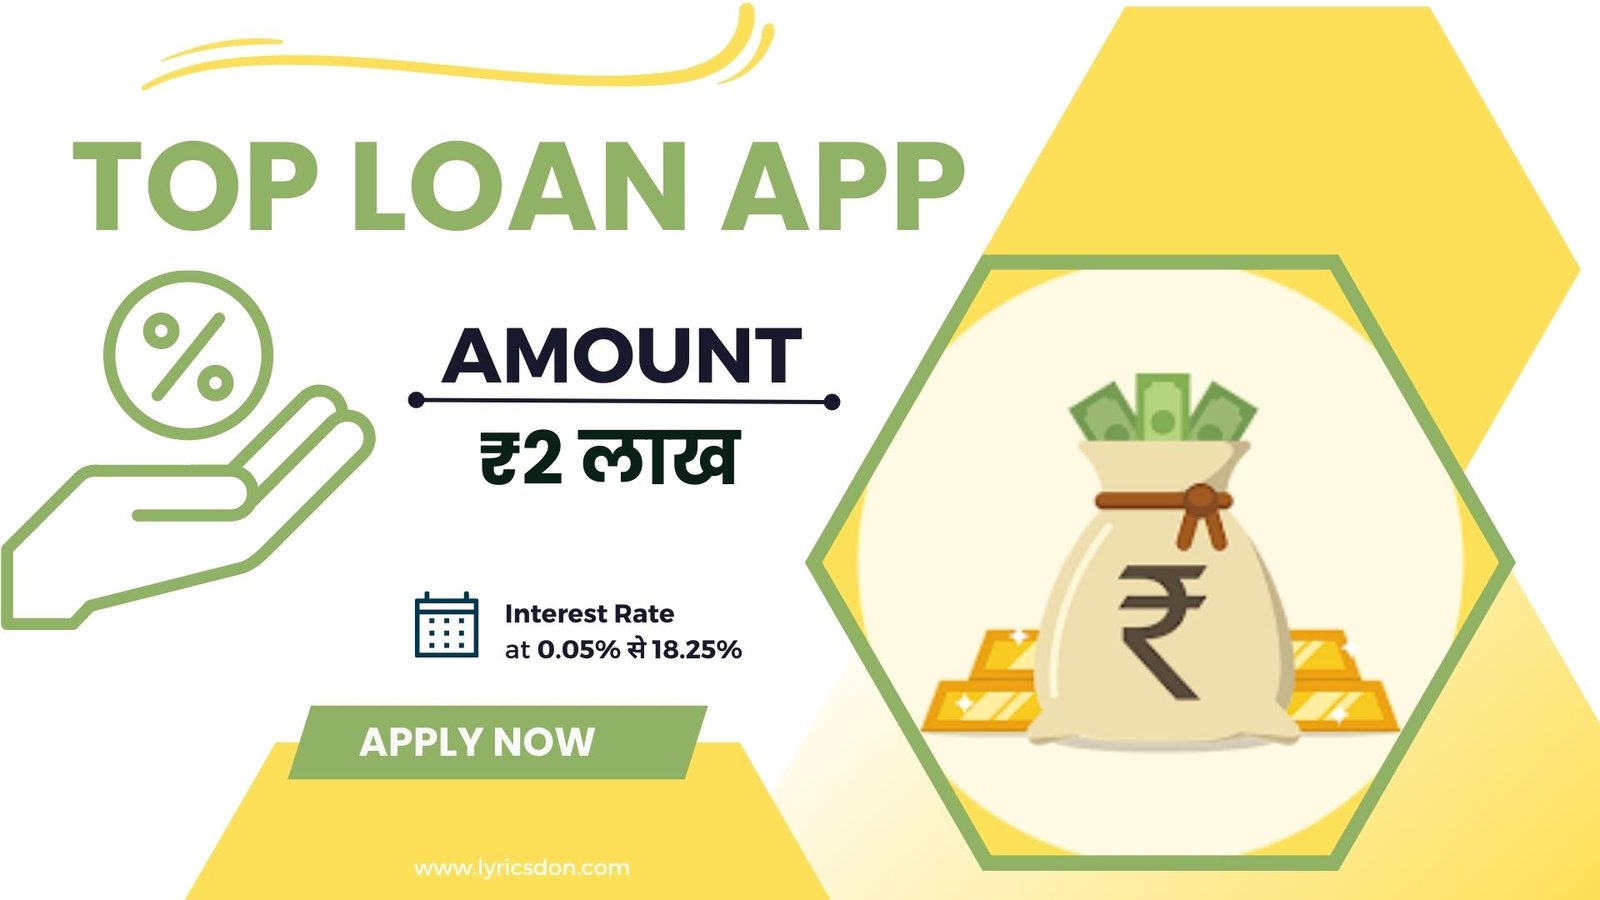 Top Loan App Loan Amount